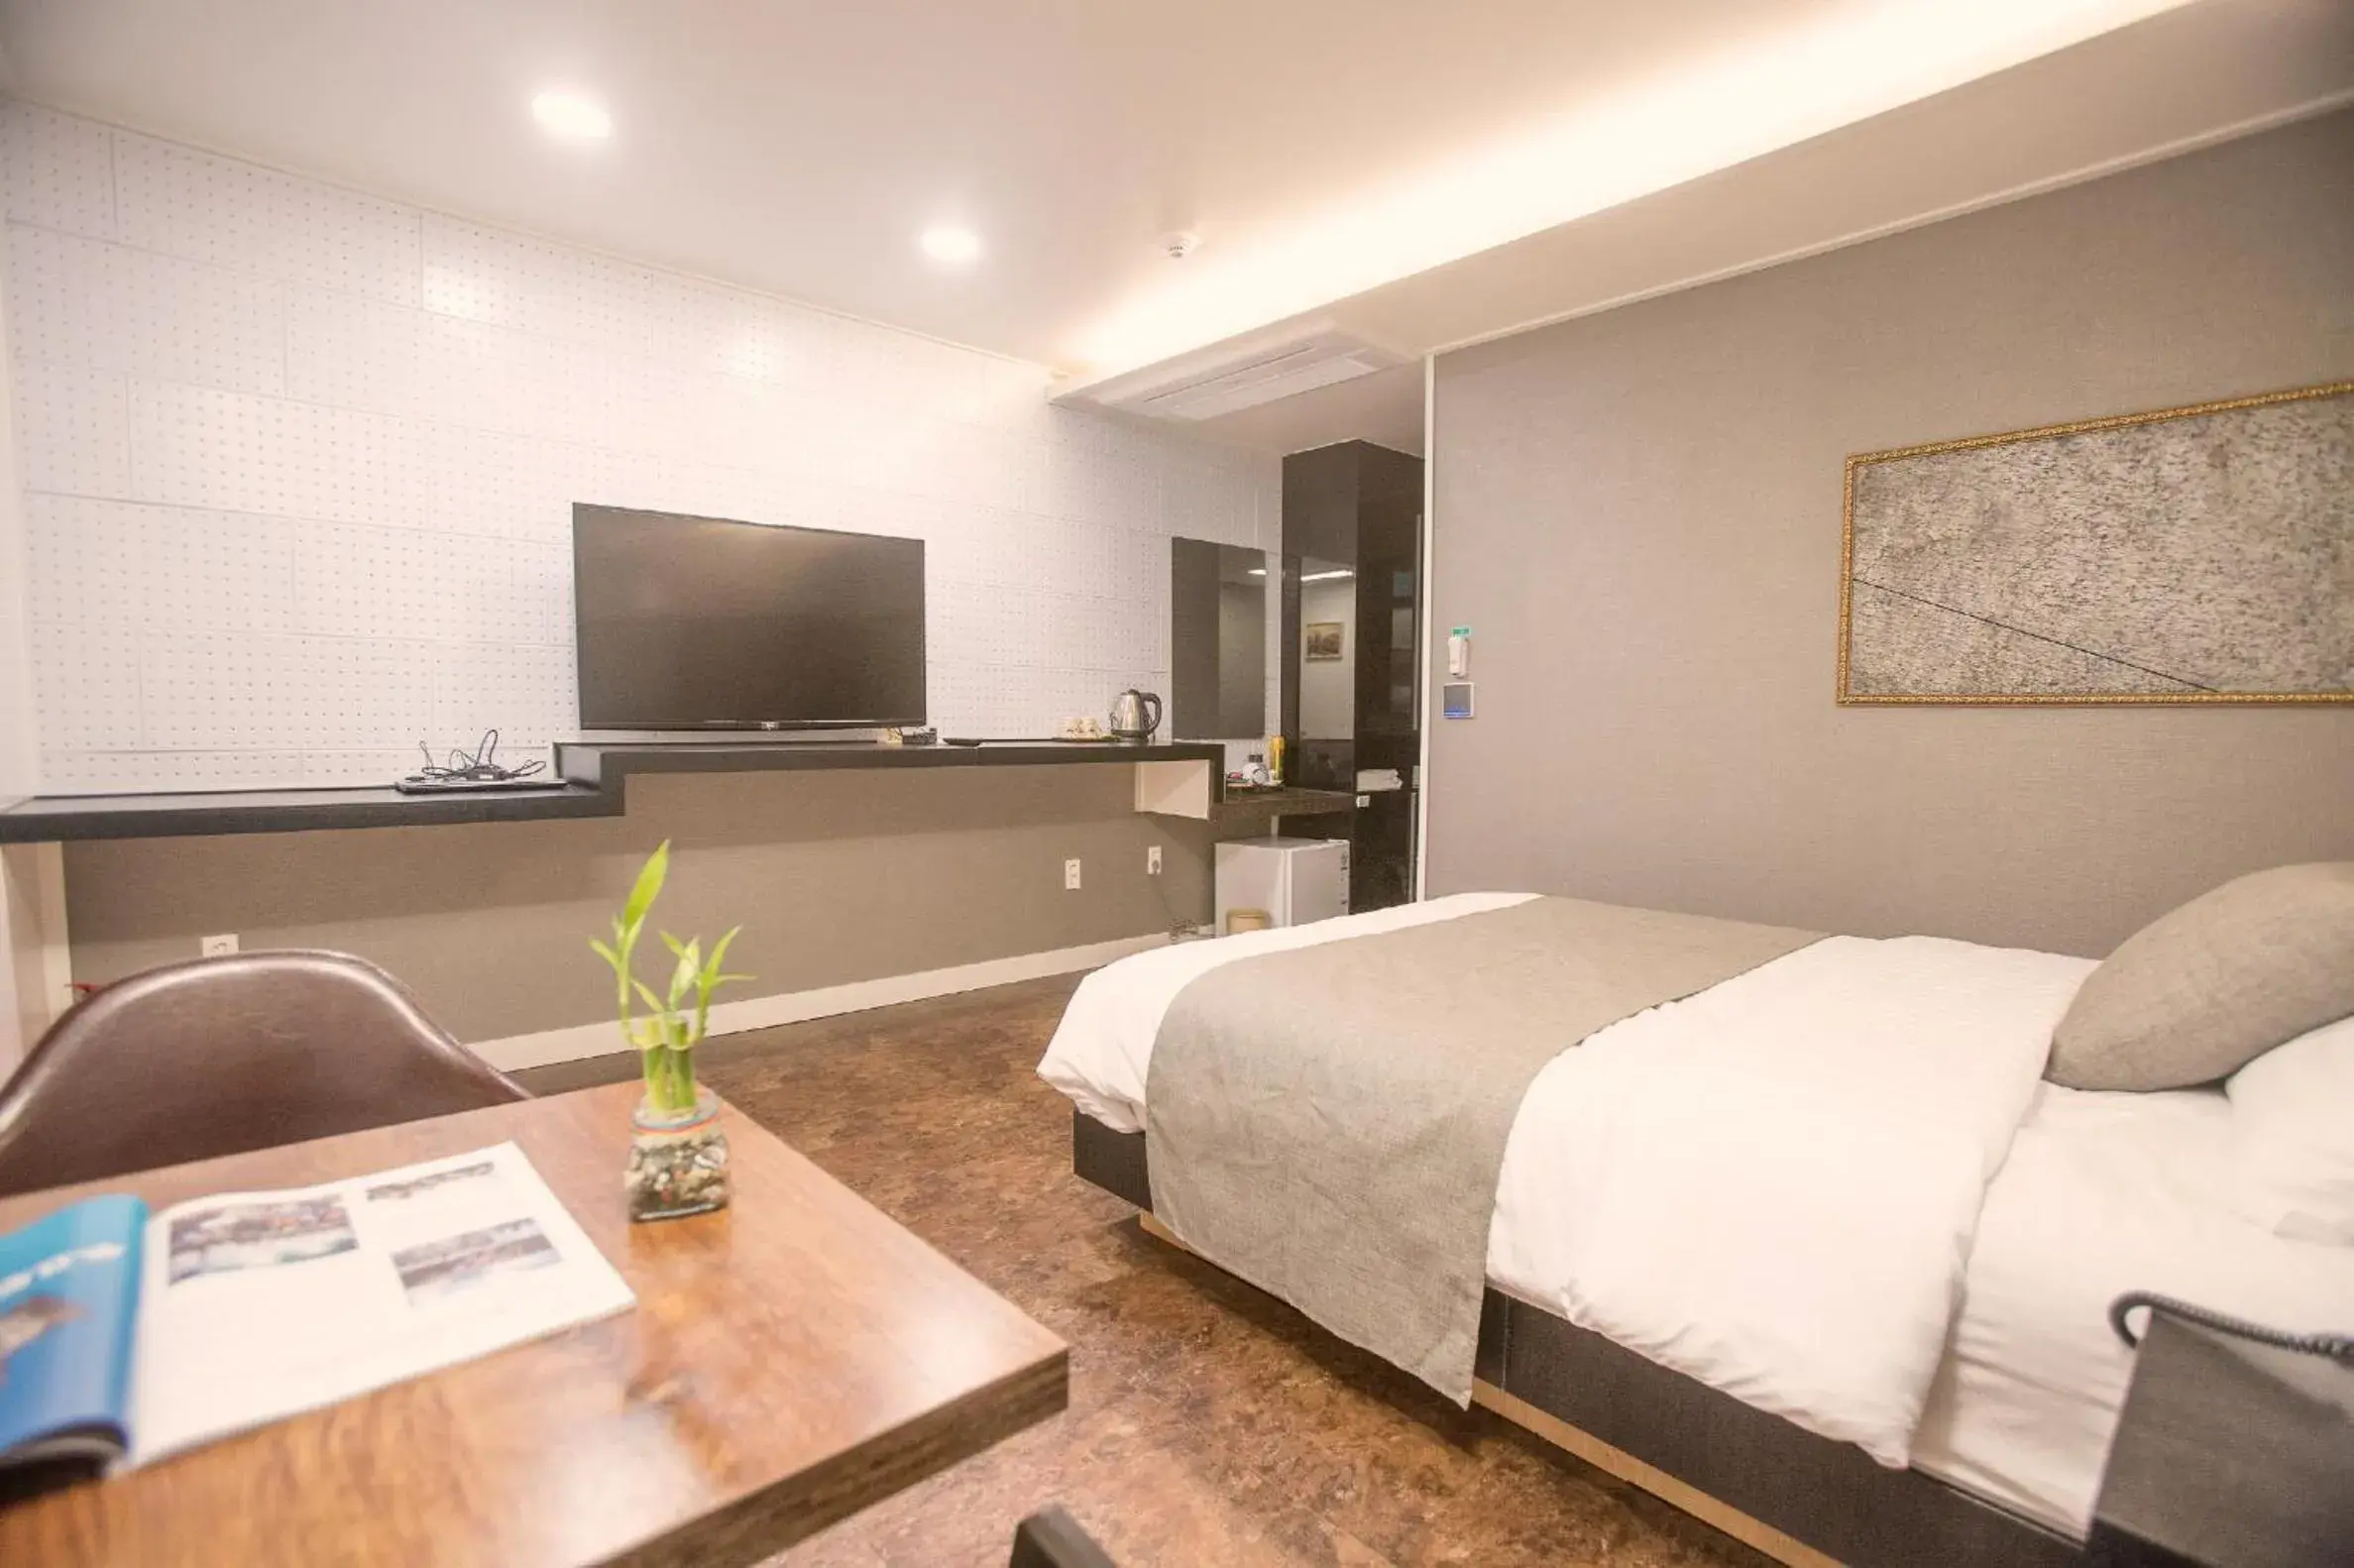 Bedroom, Room Photo in Hotel Major 2 Jeju